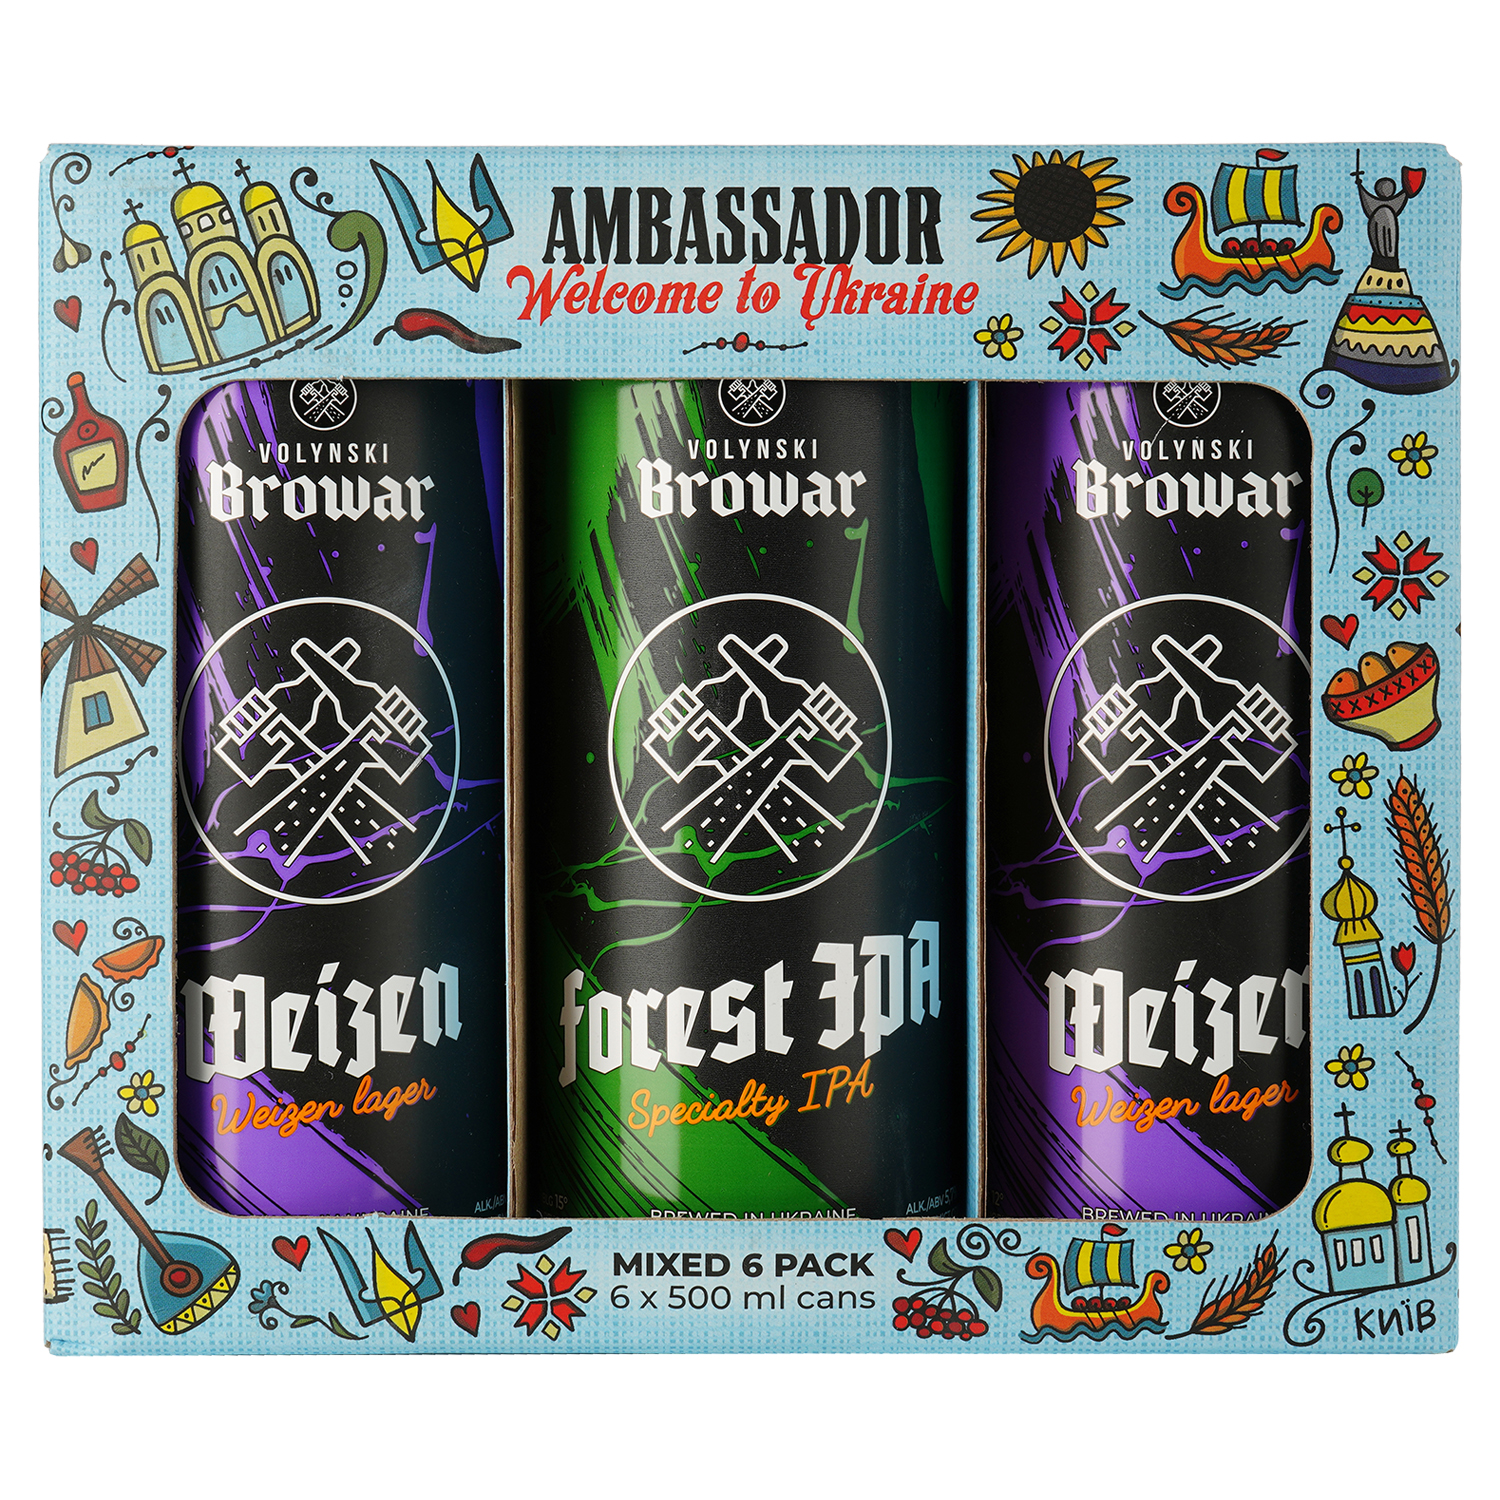 Набір пива Volynski Browar Ambassador, 4,4-5,8%, 3 л (6 шт. по 0,5 л) - фото 1